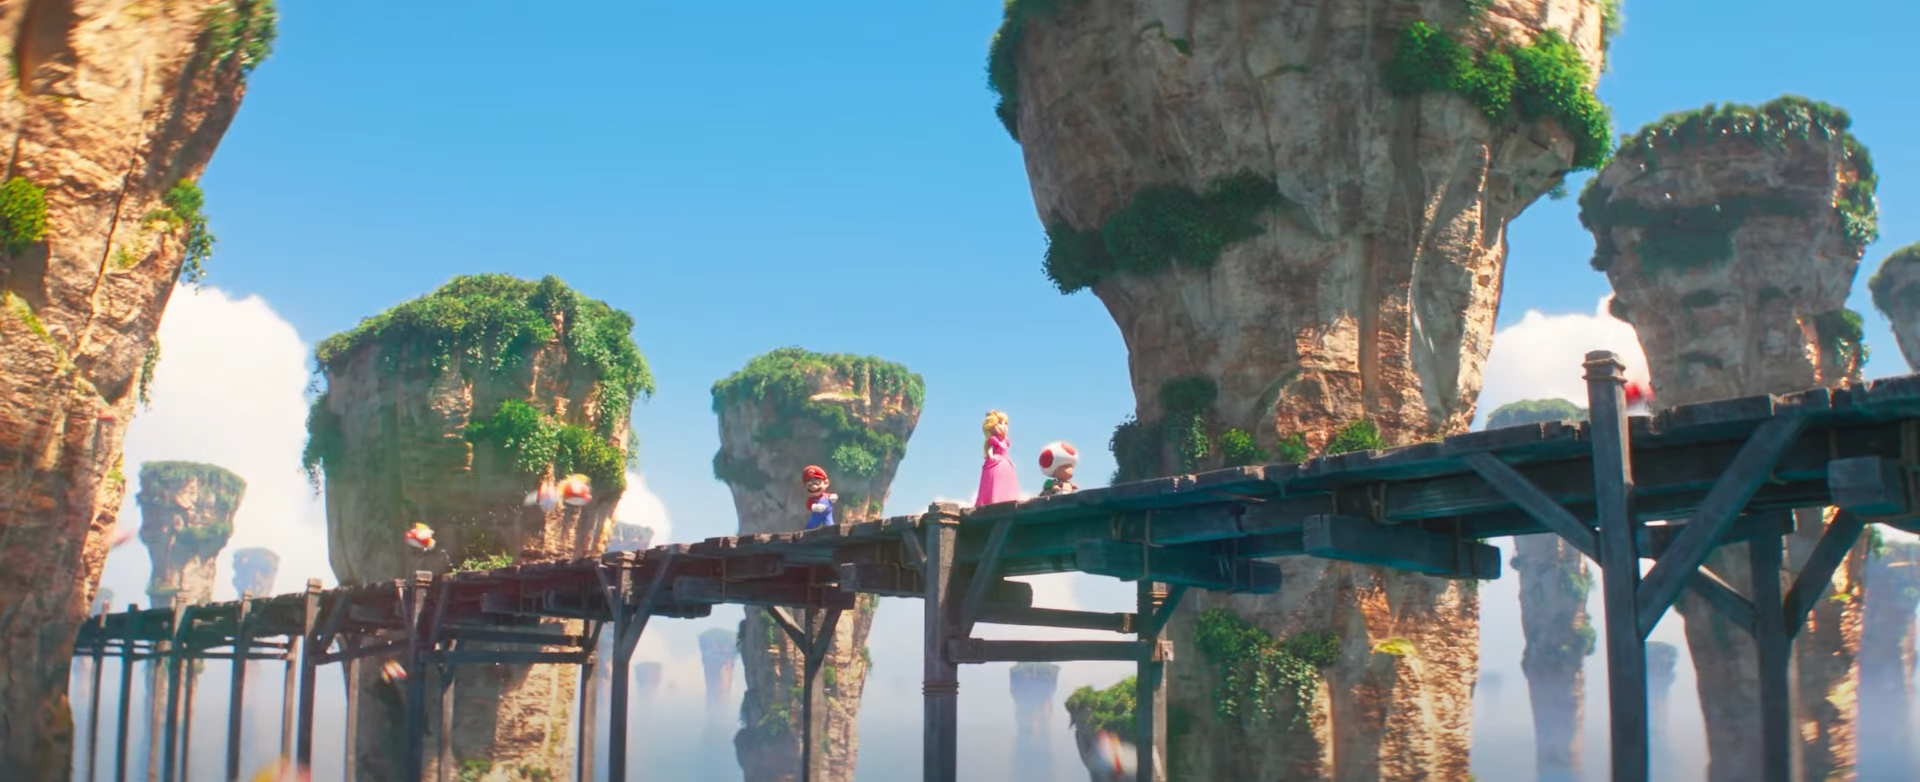 Cheep Cheep salta sobre uma ponte no filme The Super Mario Bros.